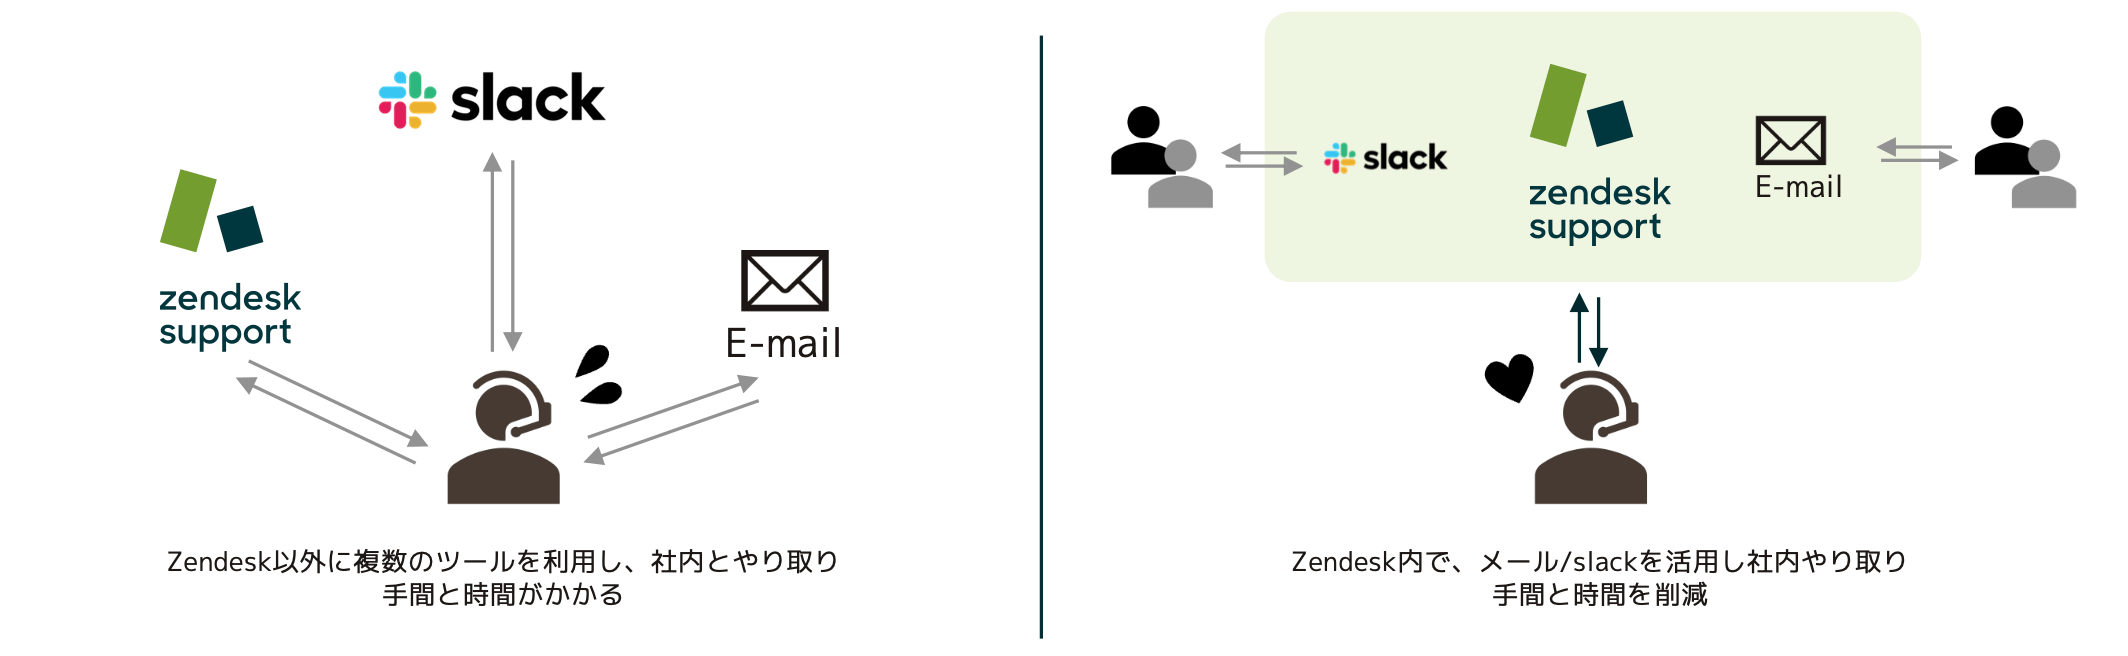 Zendeskお役立ちコラム サイドカンバセーション×mail